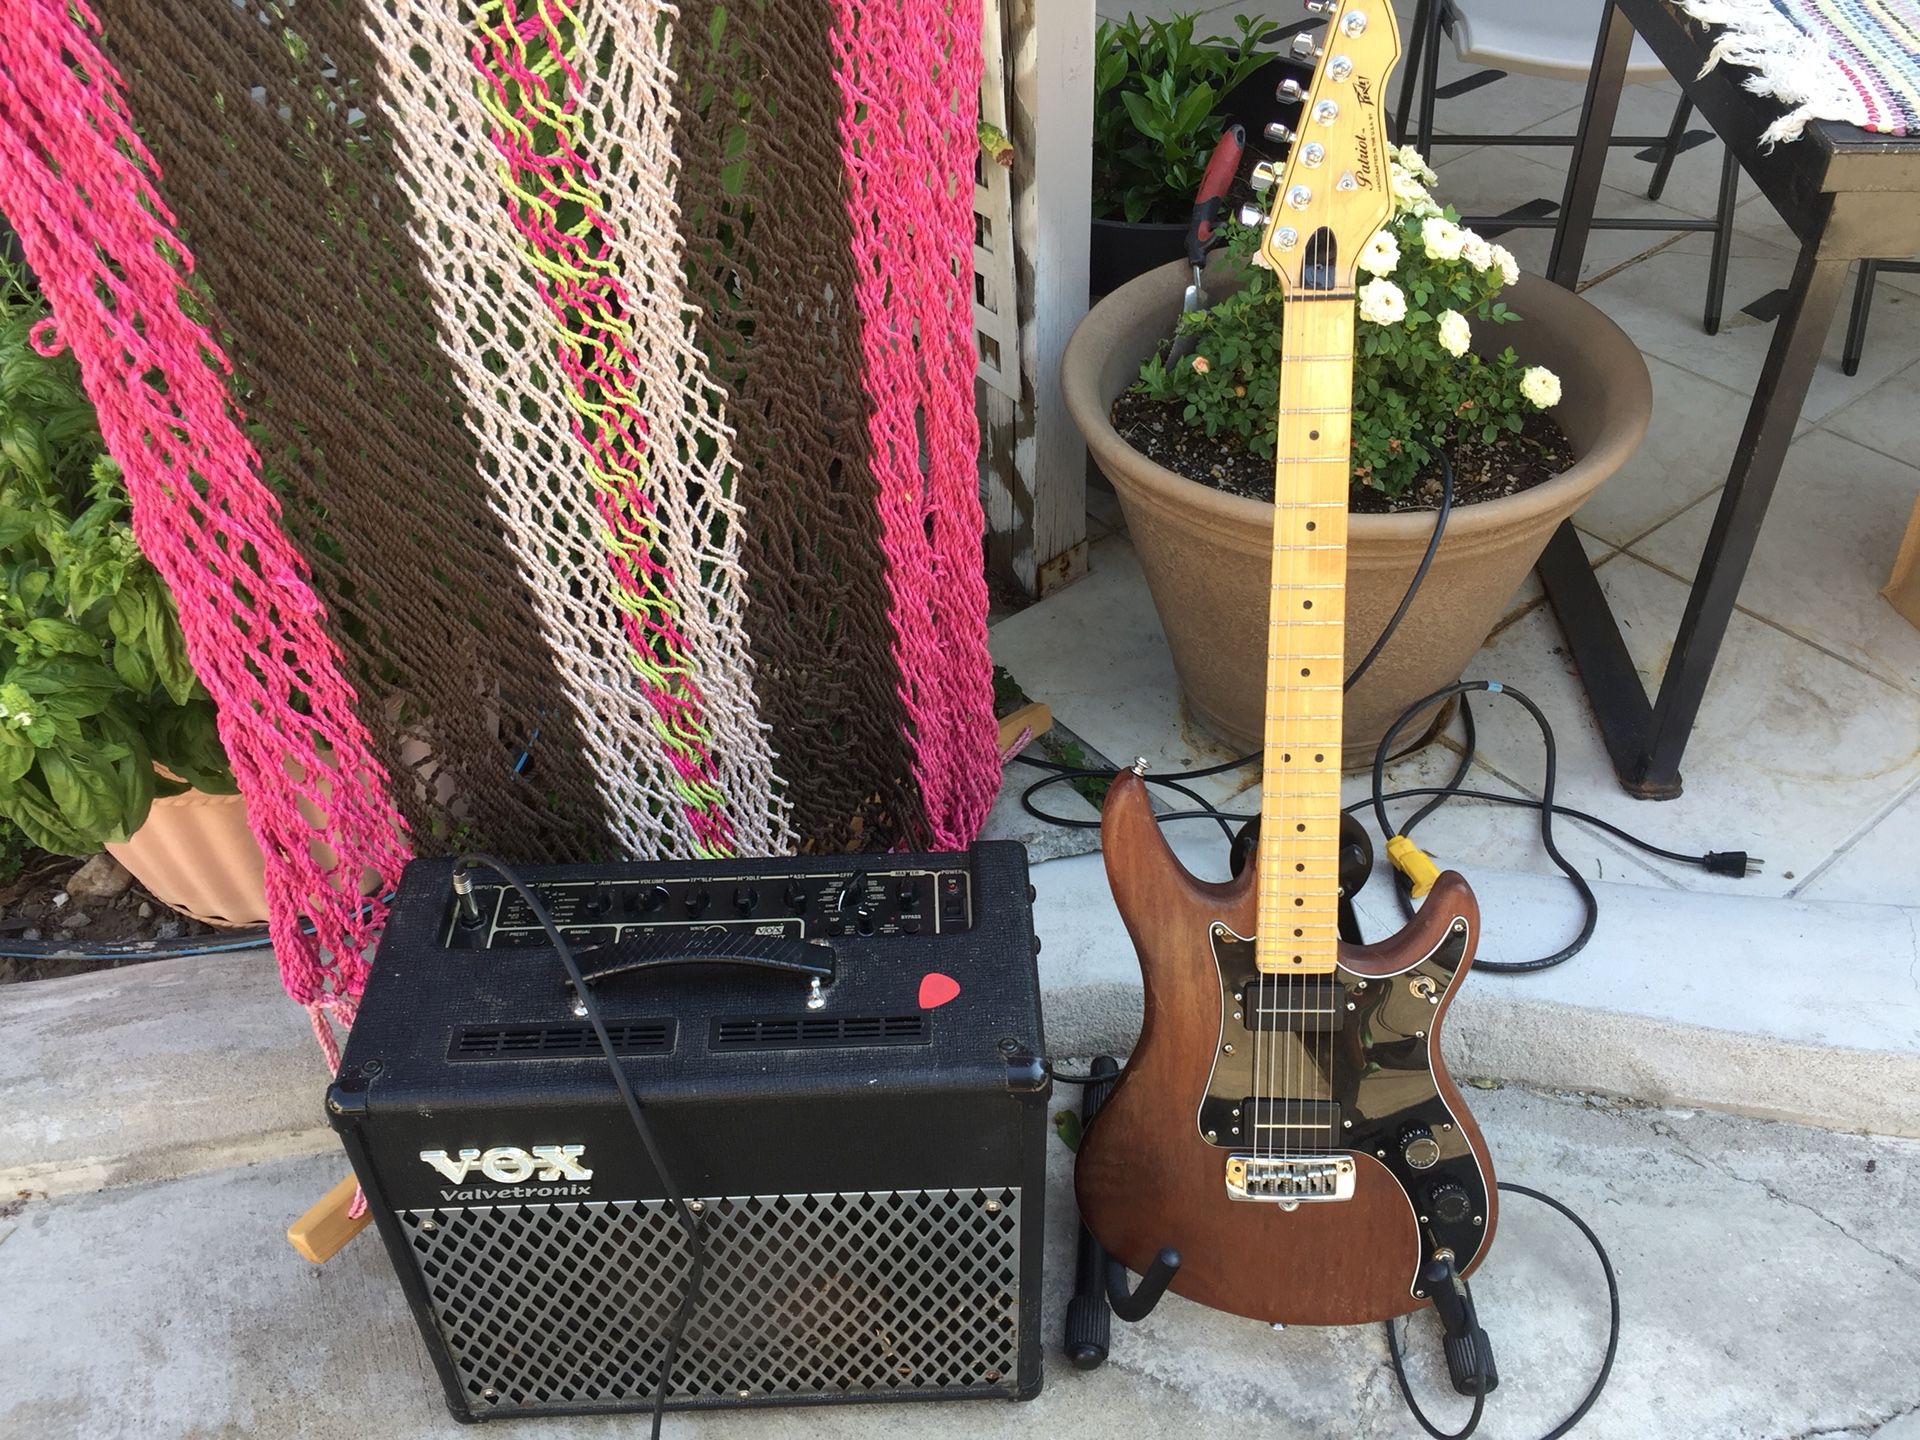 Patriot Electric Guitar & Vox Amplifier